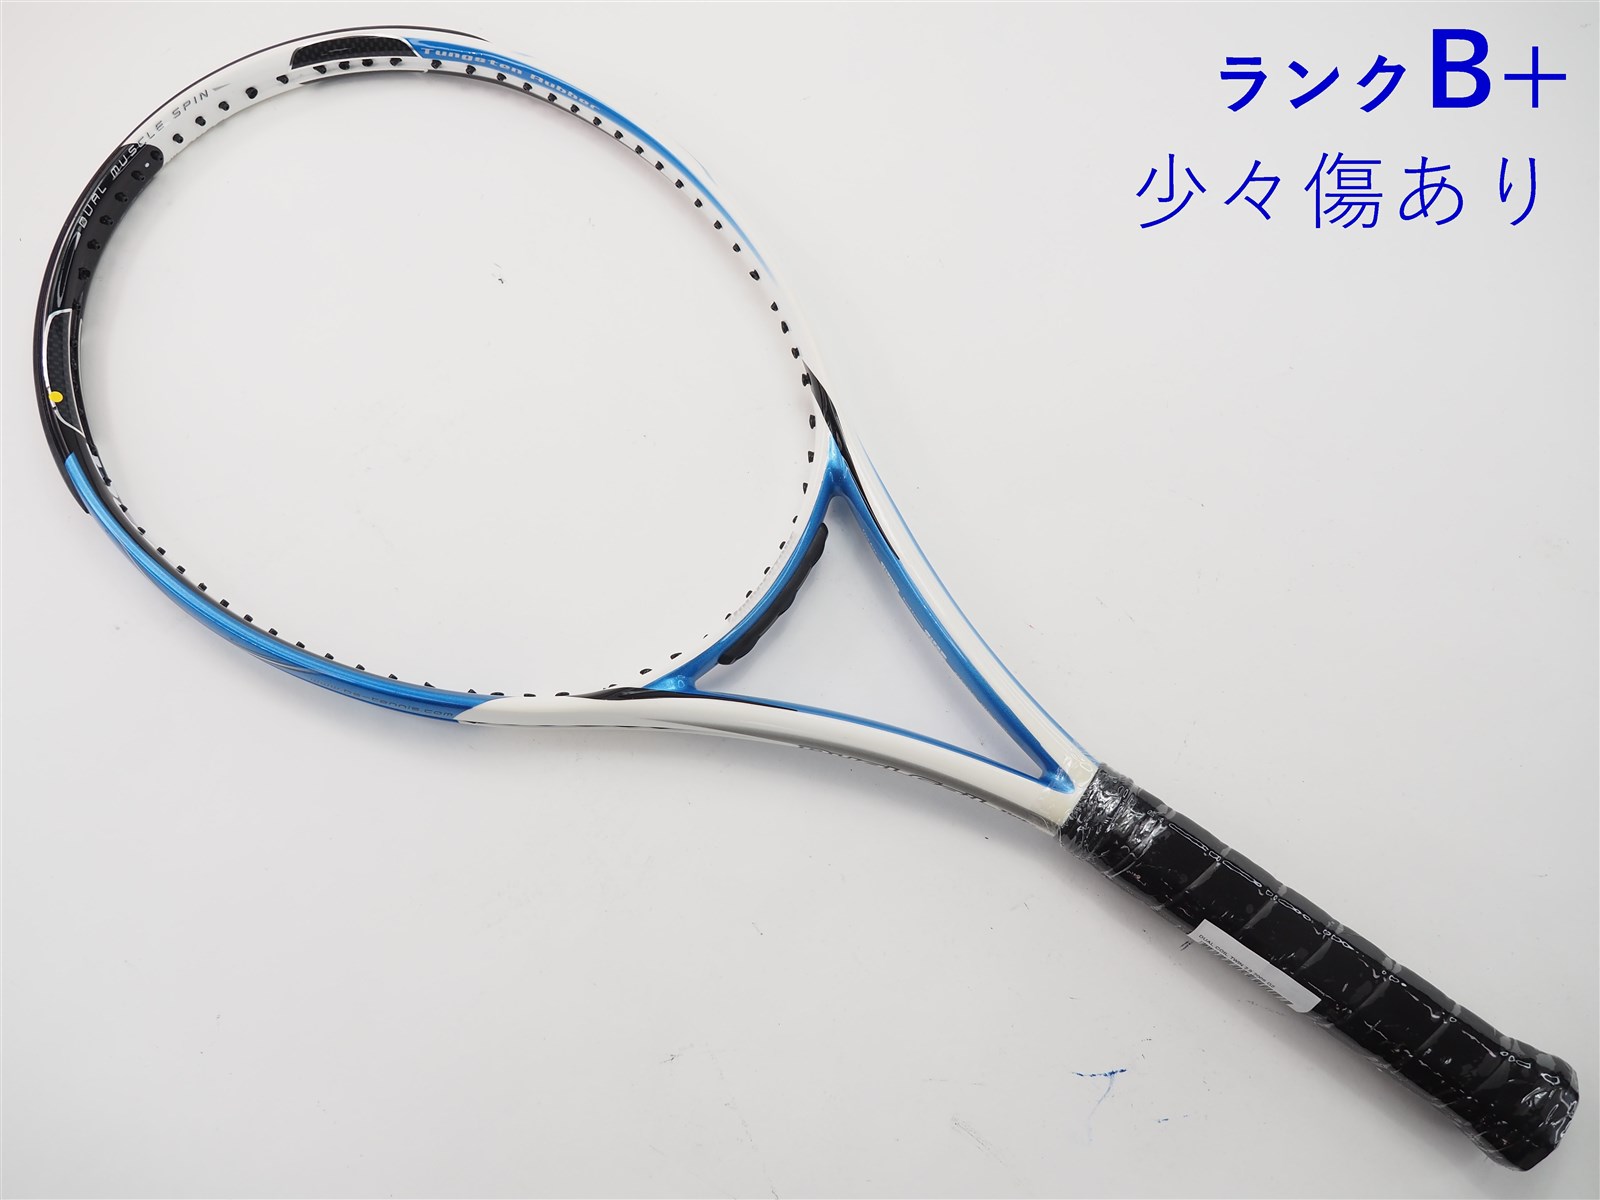 テニスラケット ブリヂストン デュアルコイル ツイン2.8 2009年モデル